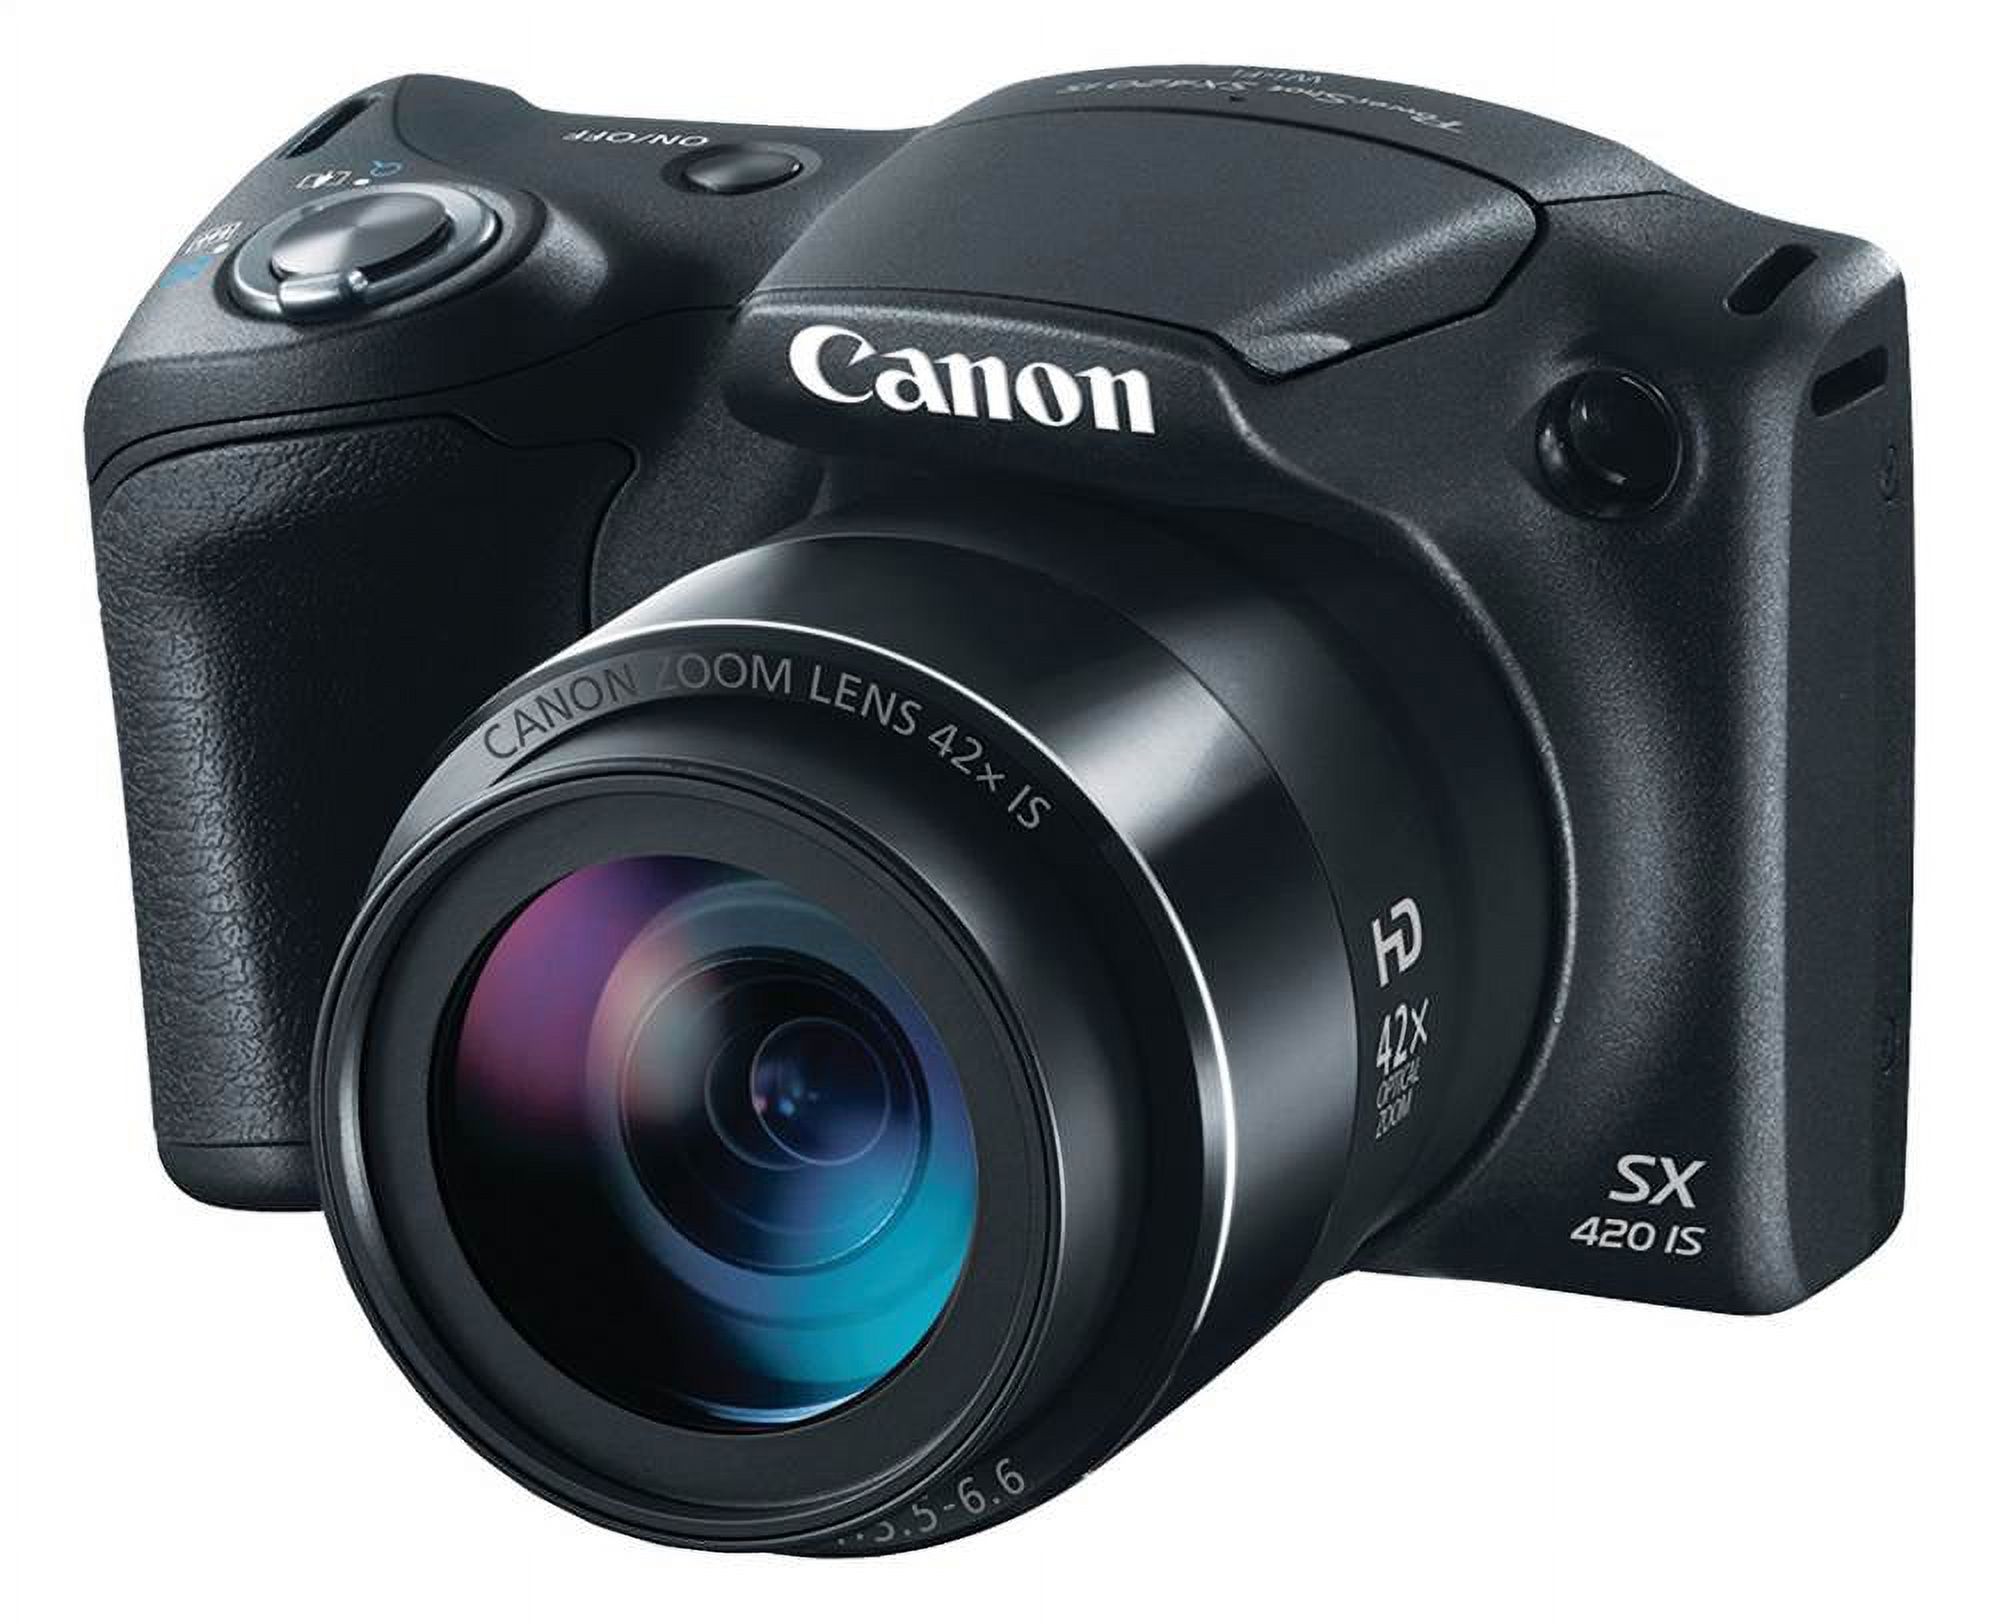 20.0-Megapixel PowerShot SX420 IS Digital Camera in Black - image 1 of 6